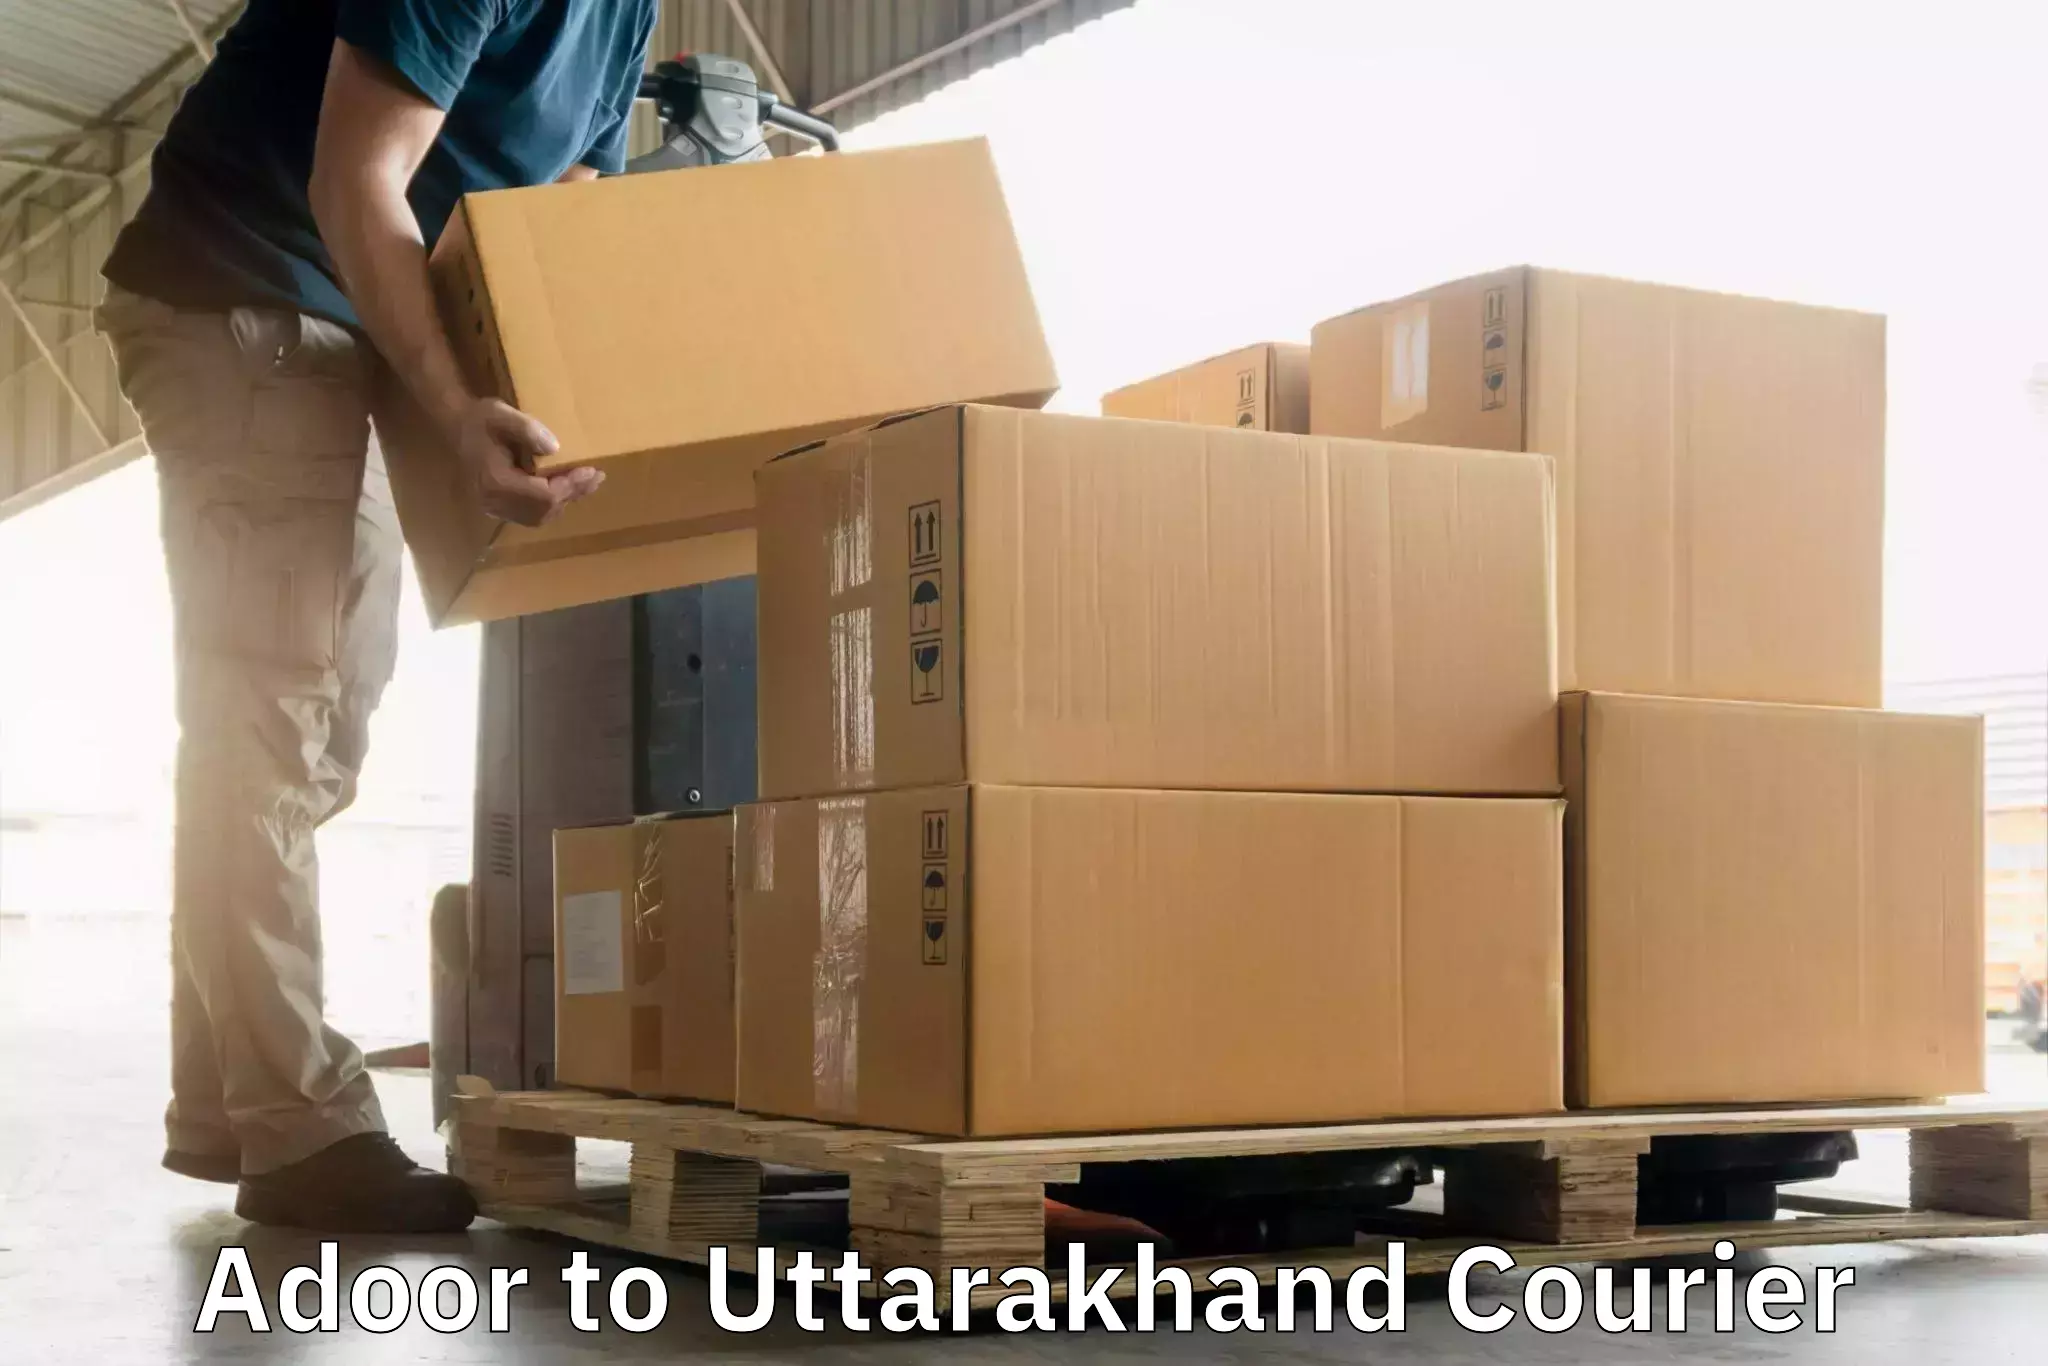 Urban courier service Adoor to Uttarakhand